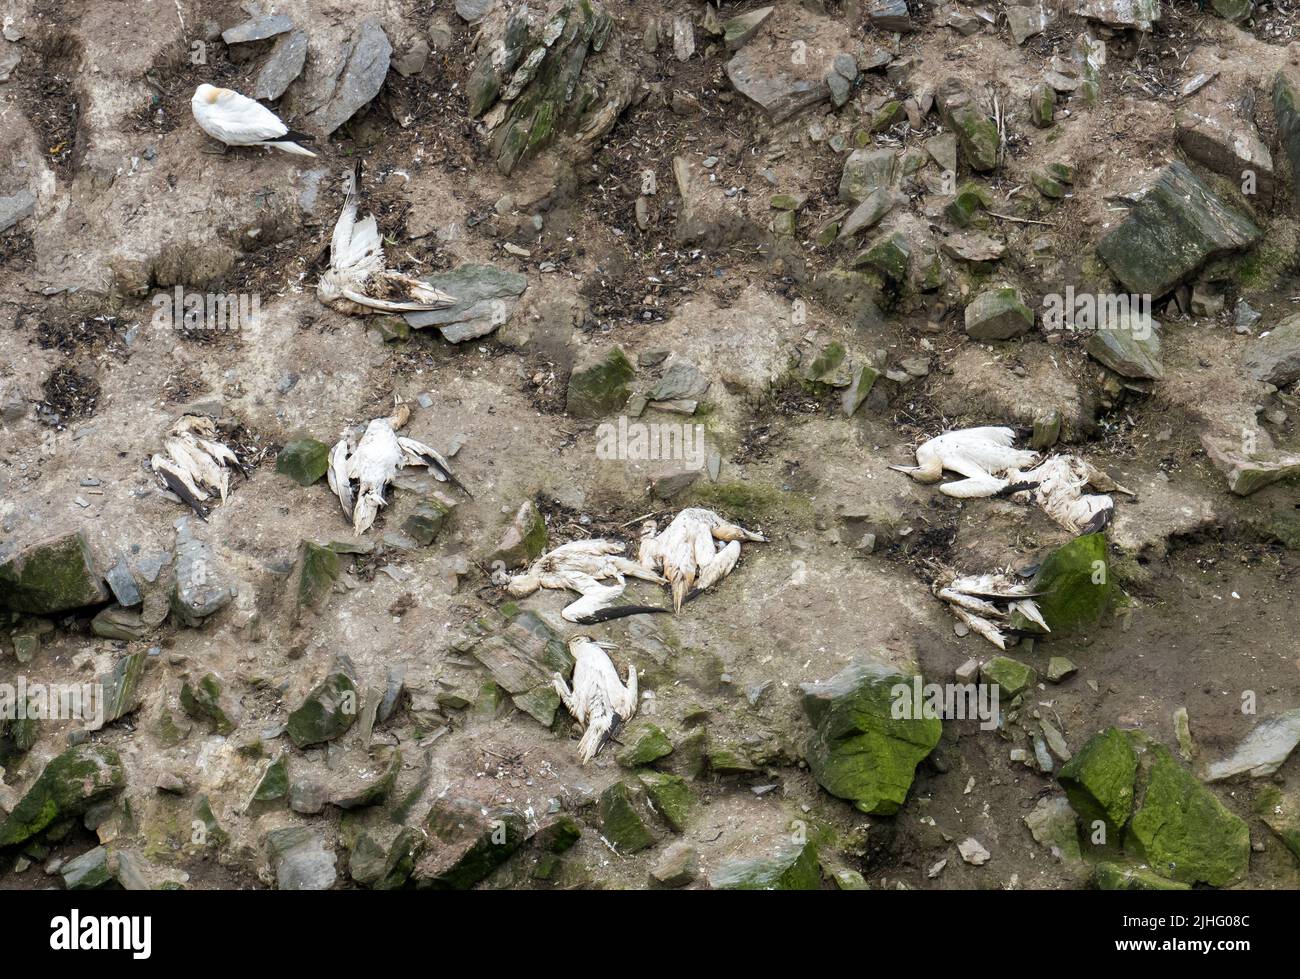 Toter Nördlicher Gannet, Morus bassanus, der bei einem Ausbruch der Vogelgrippe bei Herma Ness in Unst, Shetland, Schottland, Großbritannien, getötet wurde. Stockfoto